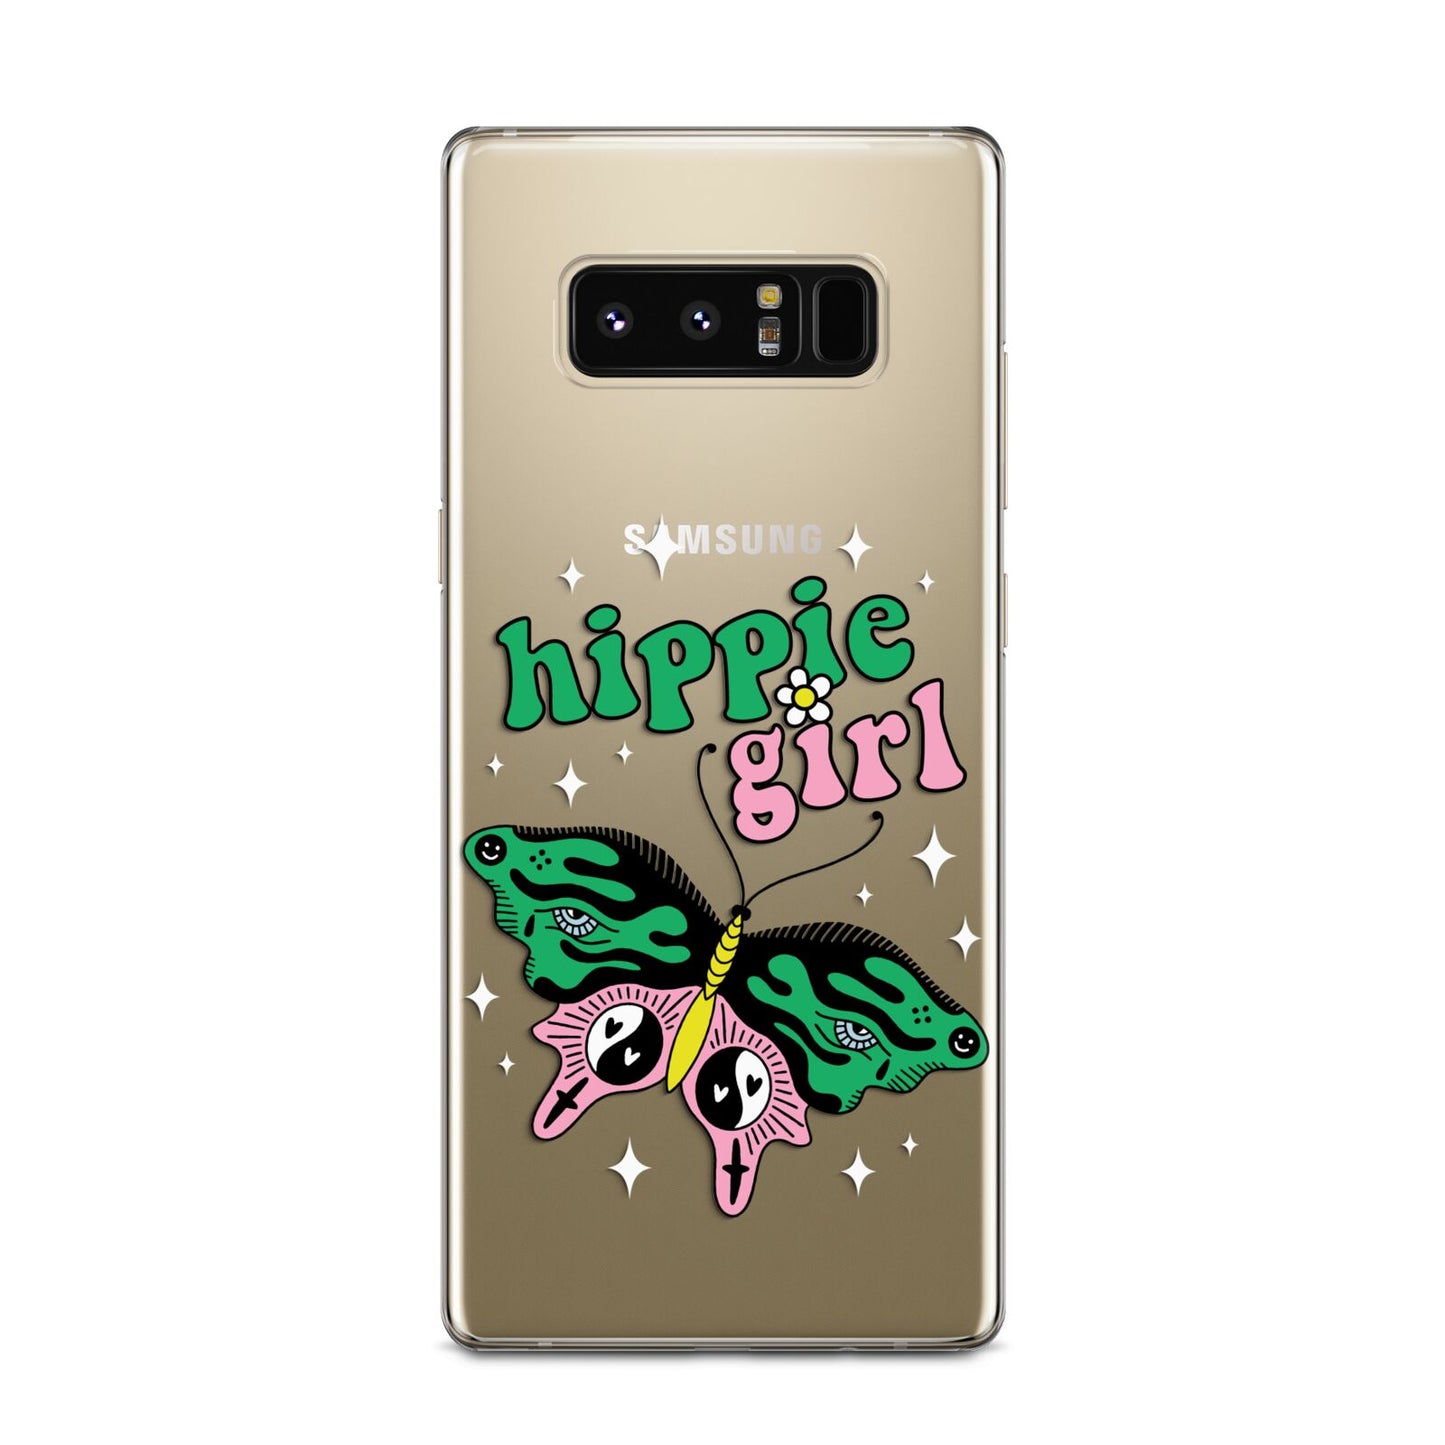 Hippie Girl Samsung Galaxy Note 8 Case